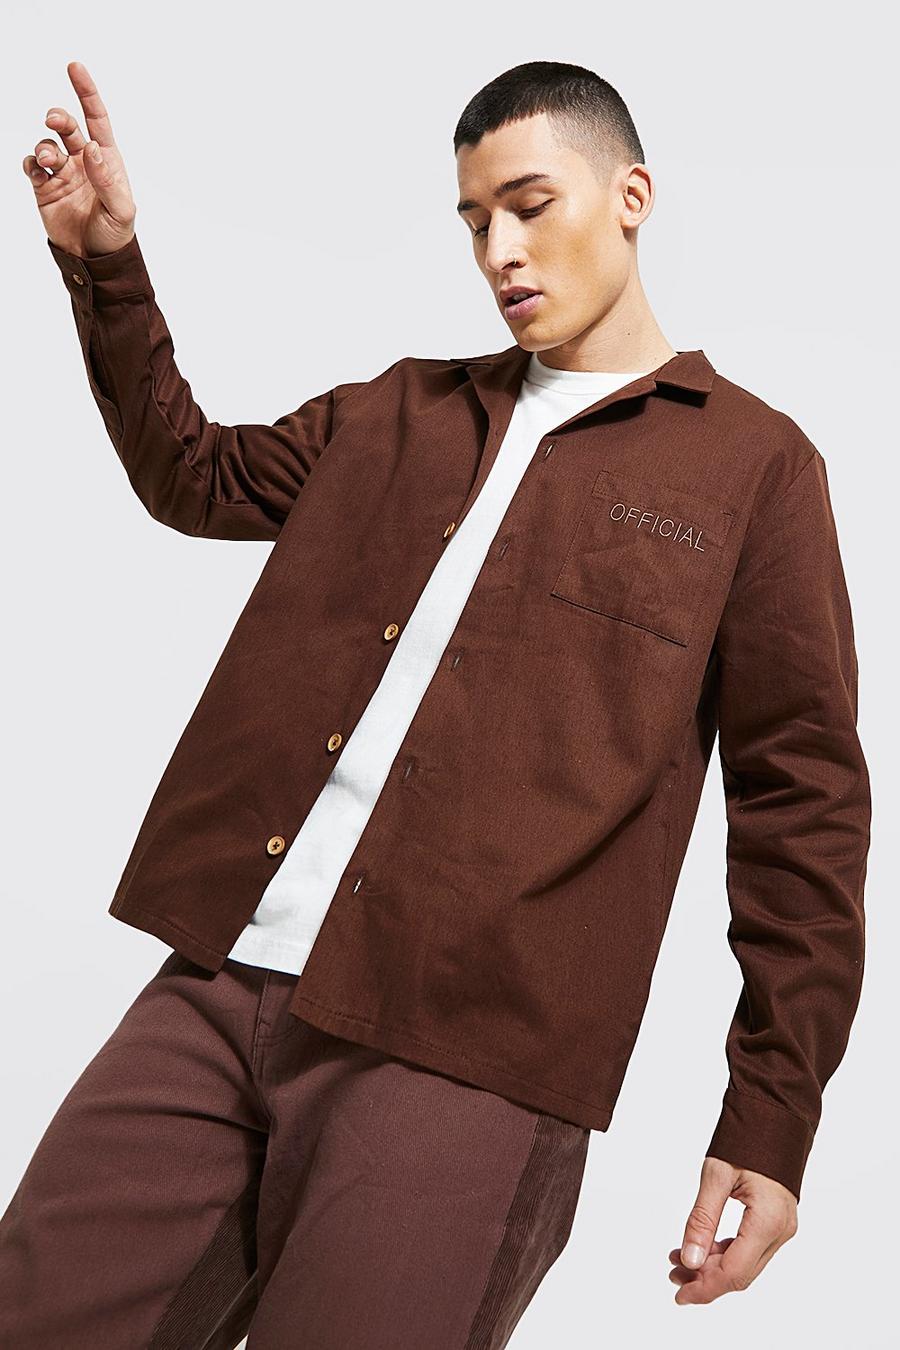 Twill-Überhemd mit Markenlogo und Tasche, Braun brown